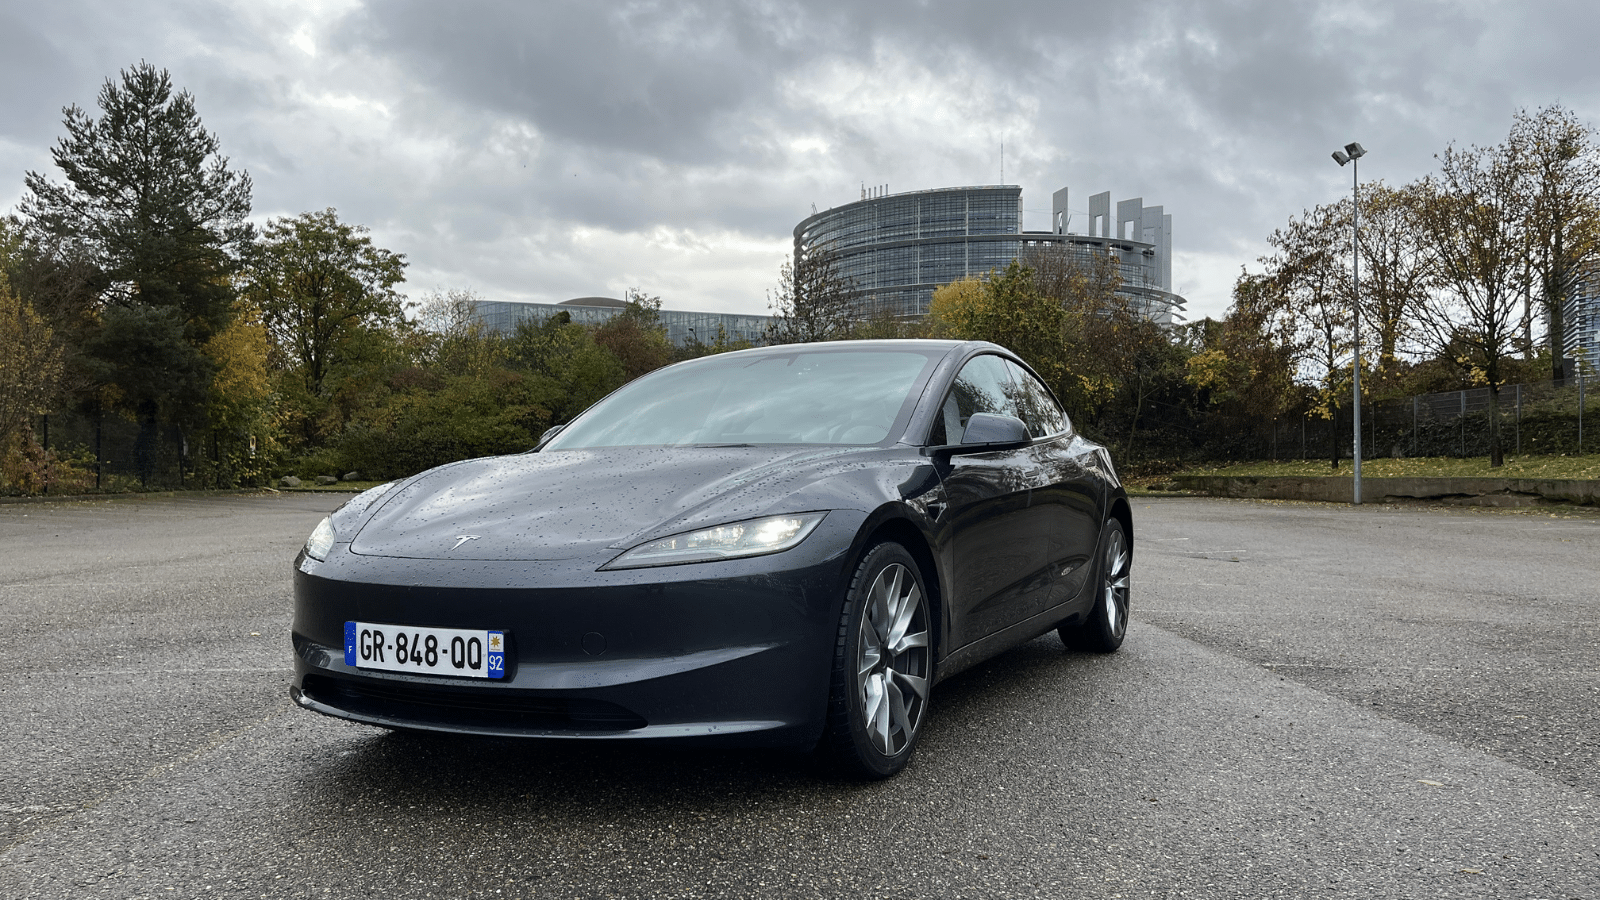 Essai longue durée - Tesla Model 3 Grande Autonomie 2024 : moins mais mieux